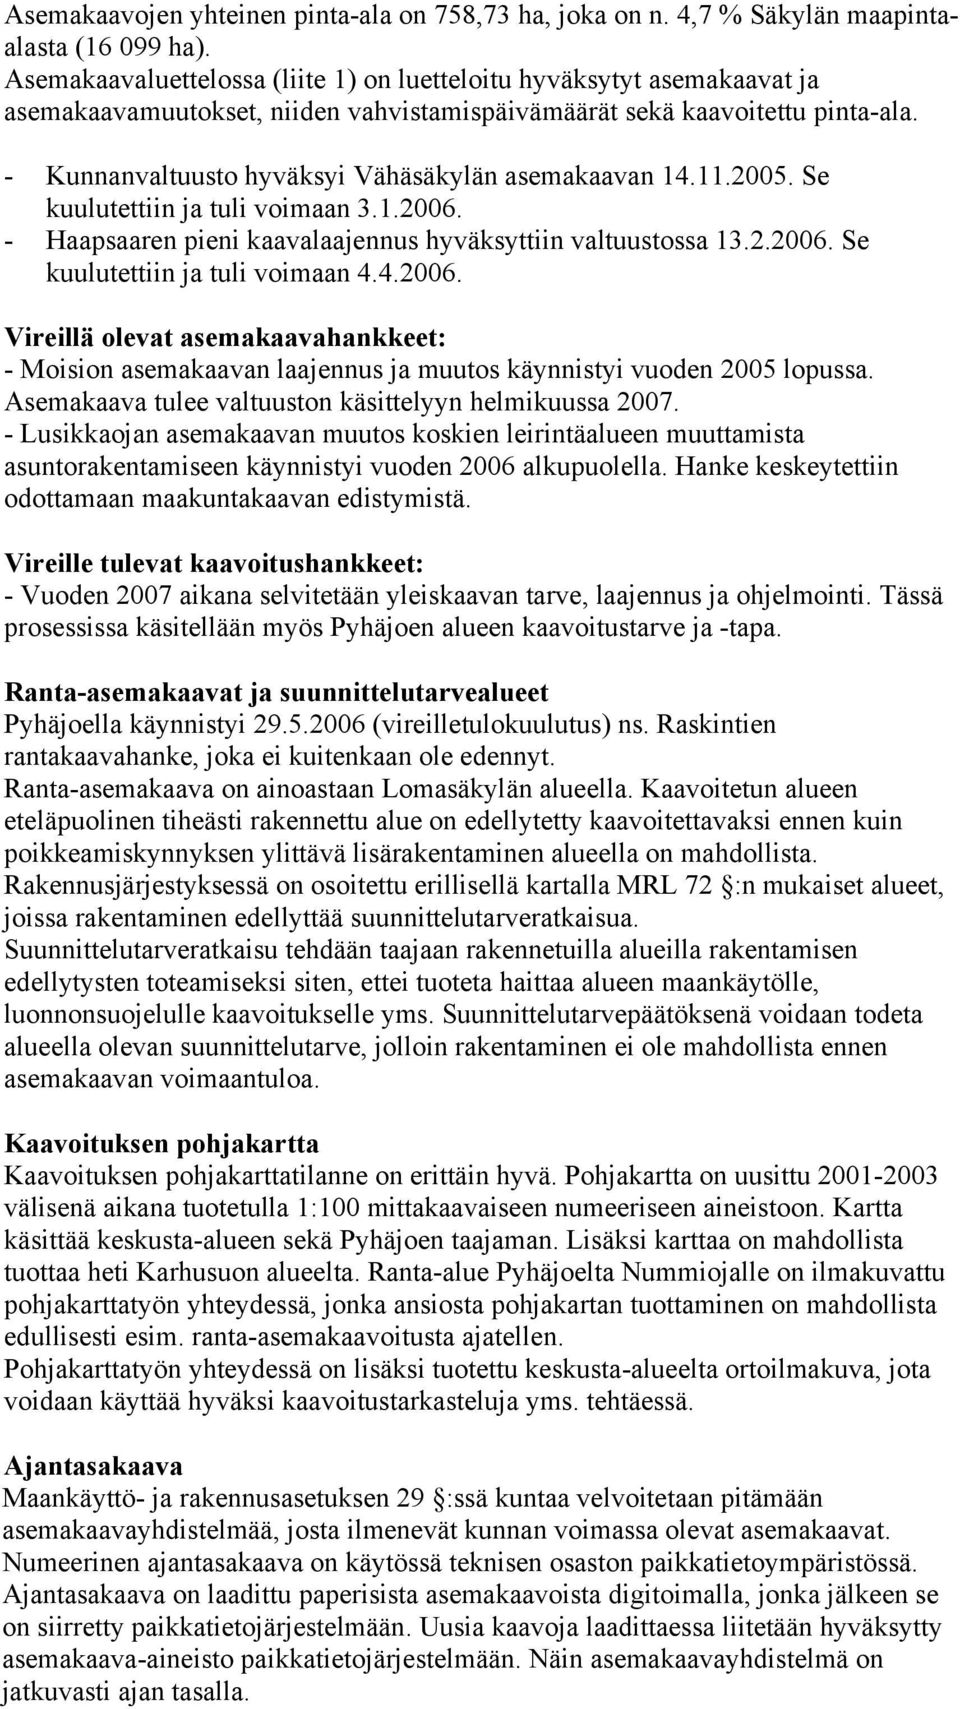 - Kunnanvaltuusto hyväksyi Vähäsäkylän asemakaavan 14.11.2005. Se kuulutettiin ja tuli voimaan 3.1.2006. - Haapsaaren pieni kaavalaajennus hyväksyttiin valtuustossa 13.2.2006. Se kuulutettiin ja tuli voimaan 4.